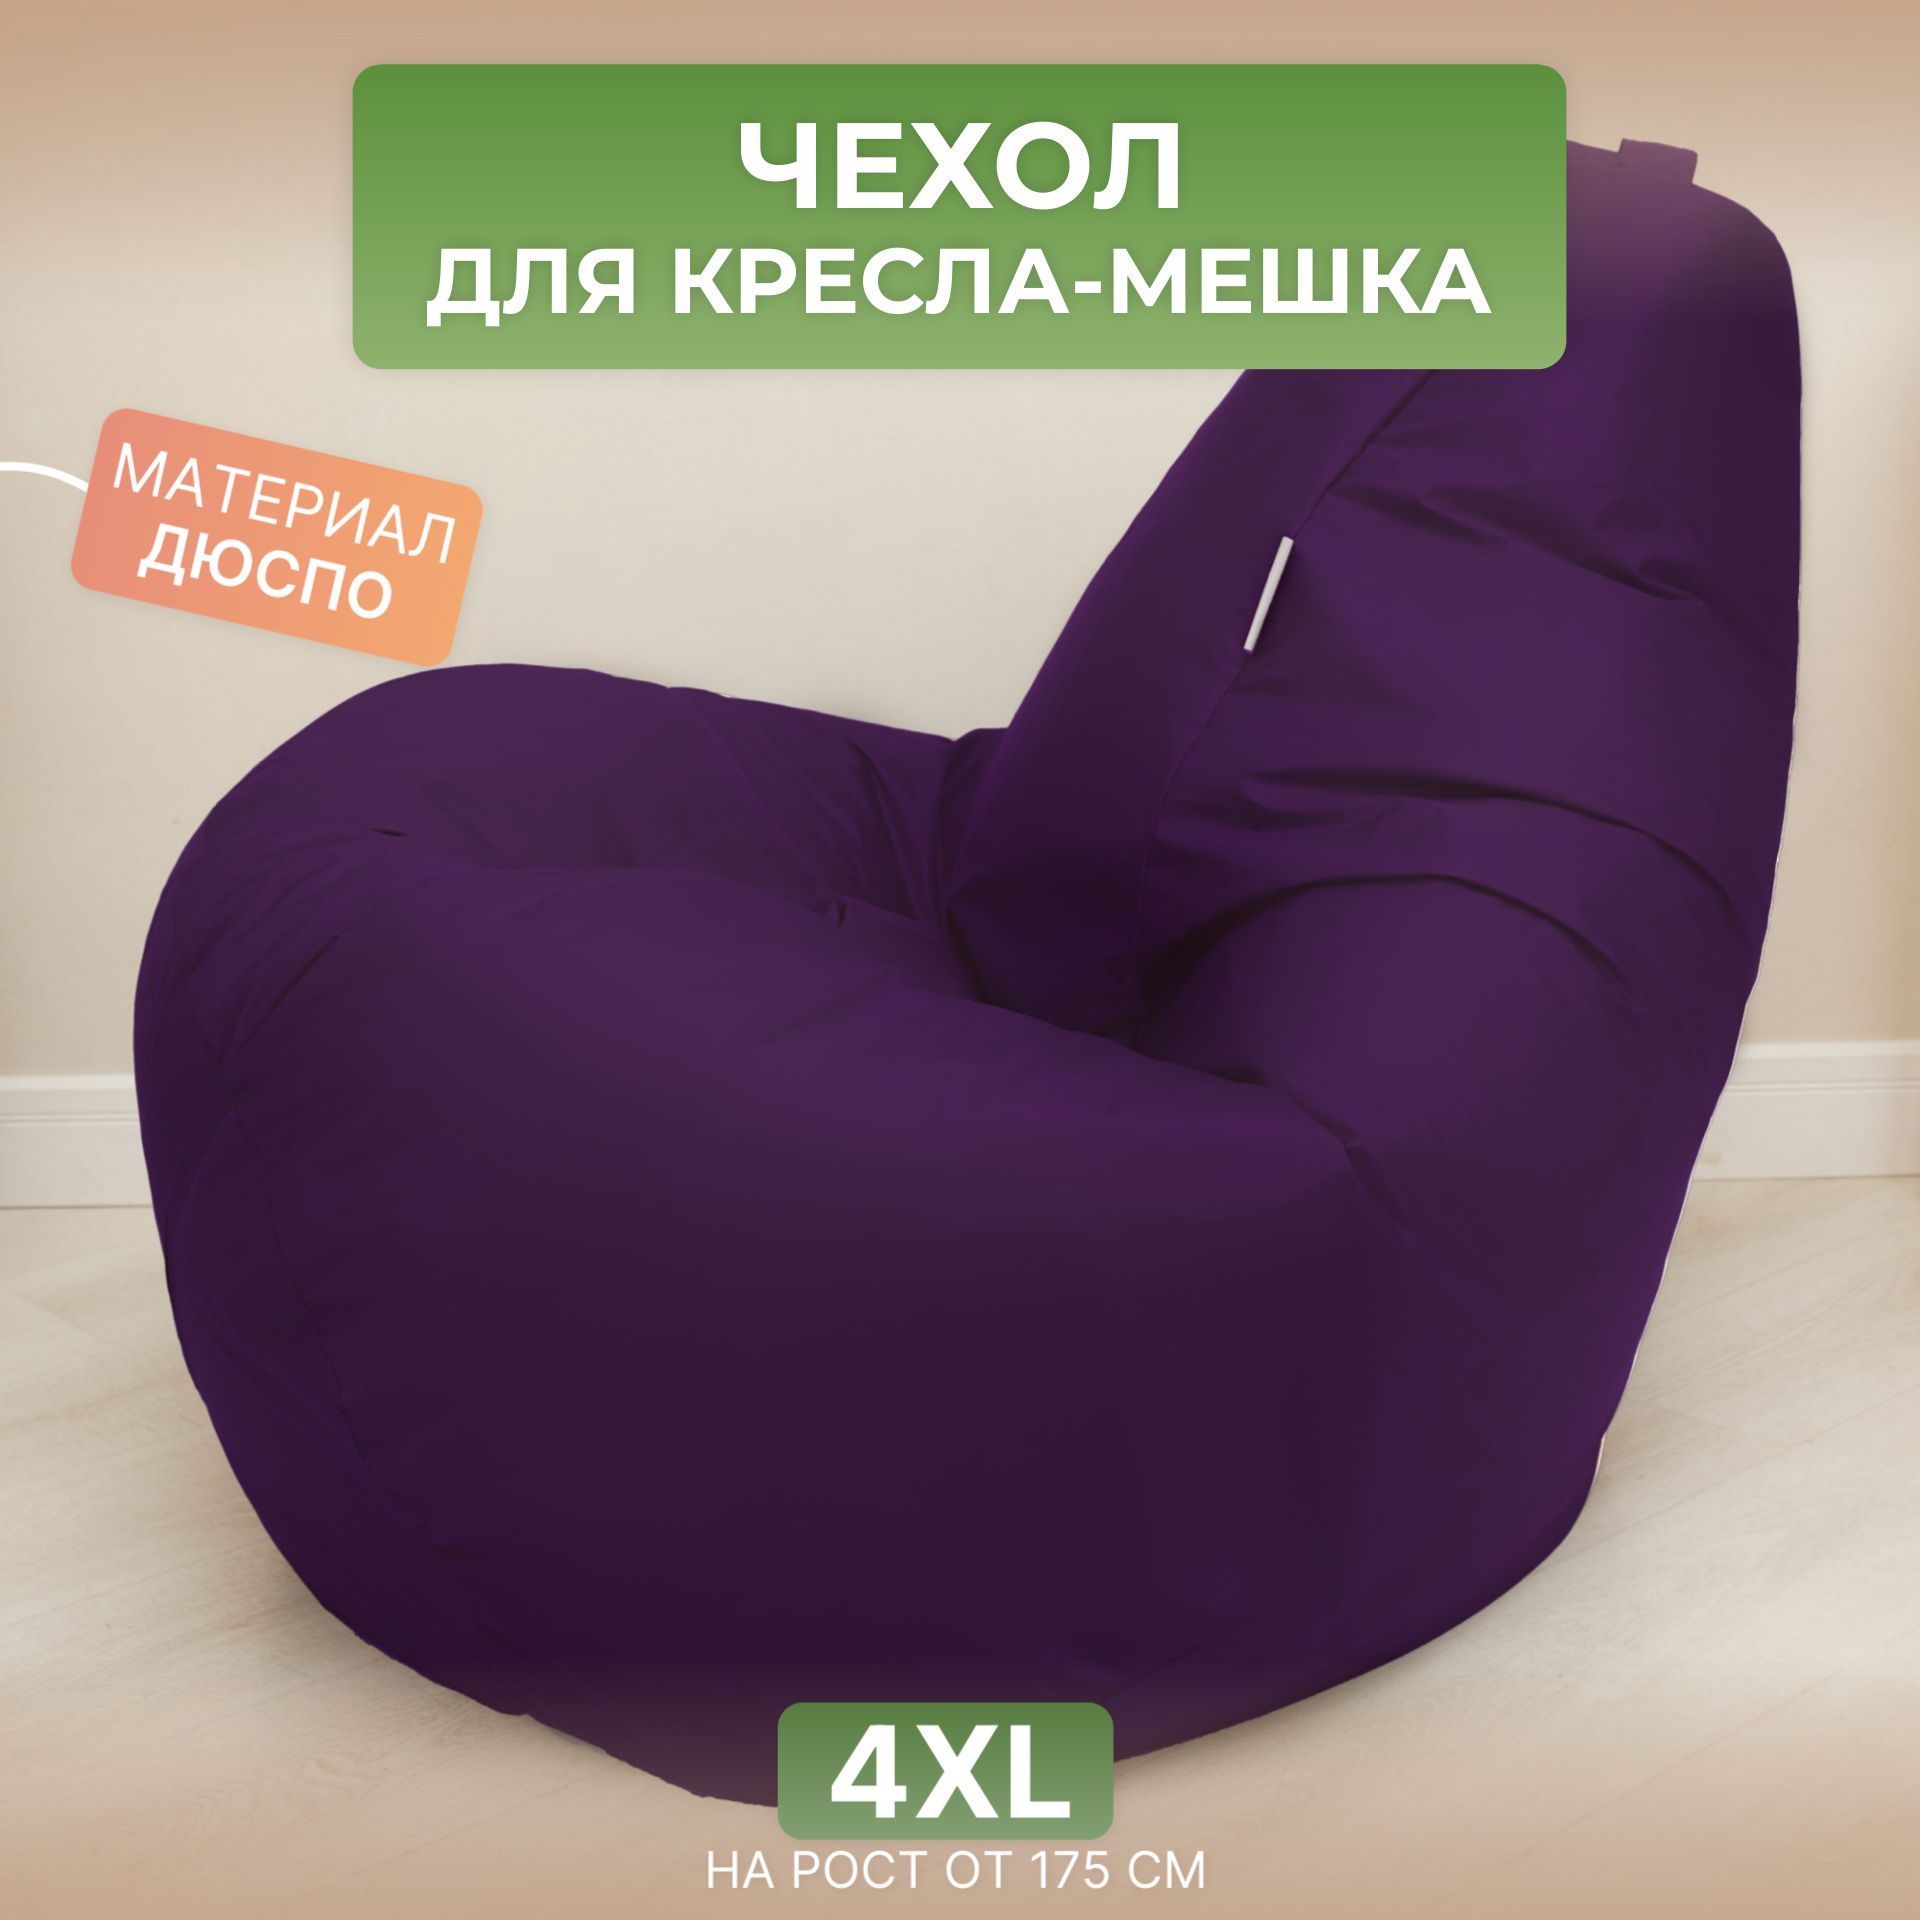 Чехол для кресла-мешка Divan Груша 4XL фиолетовый